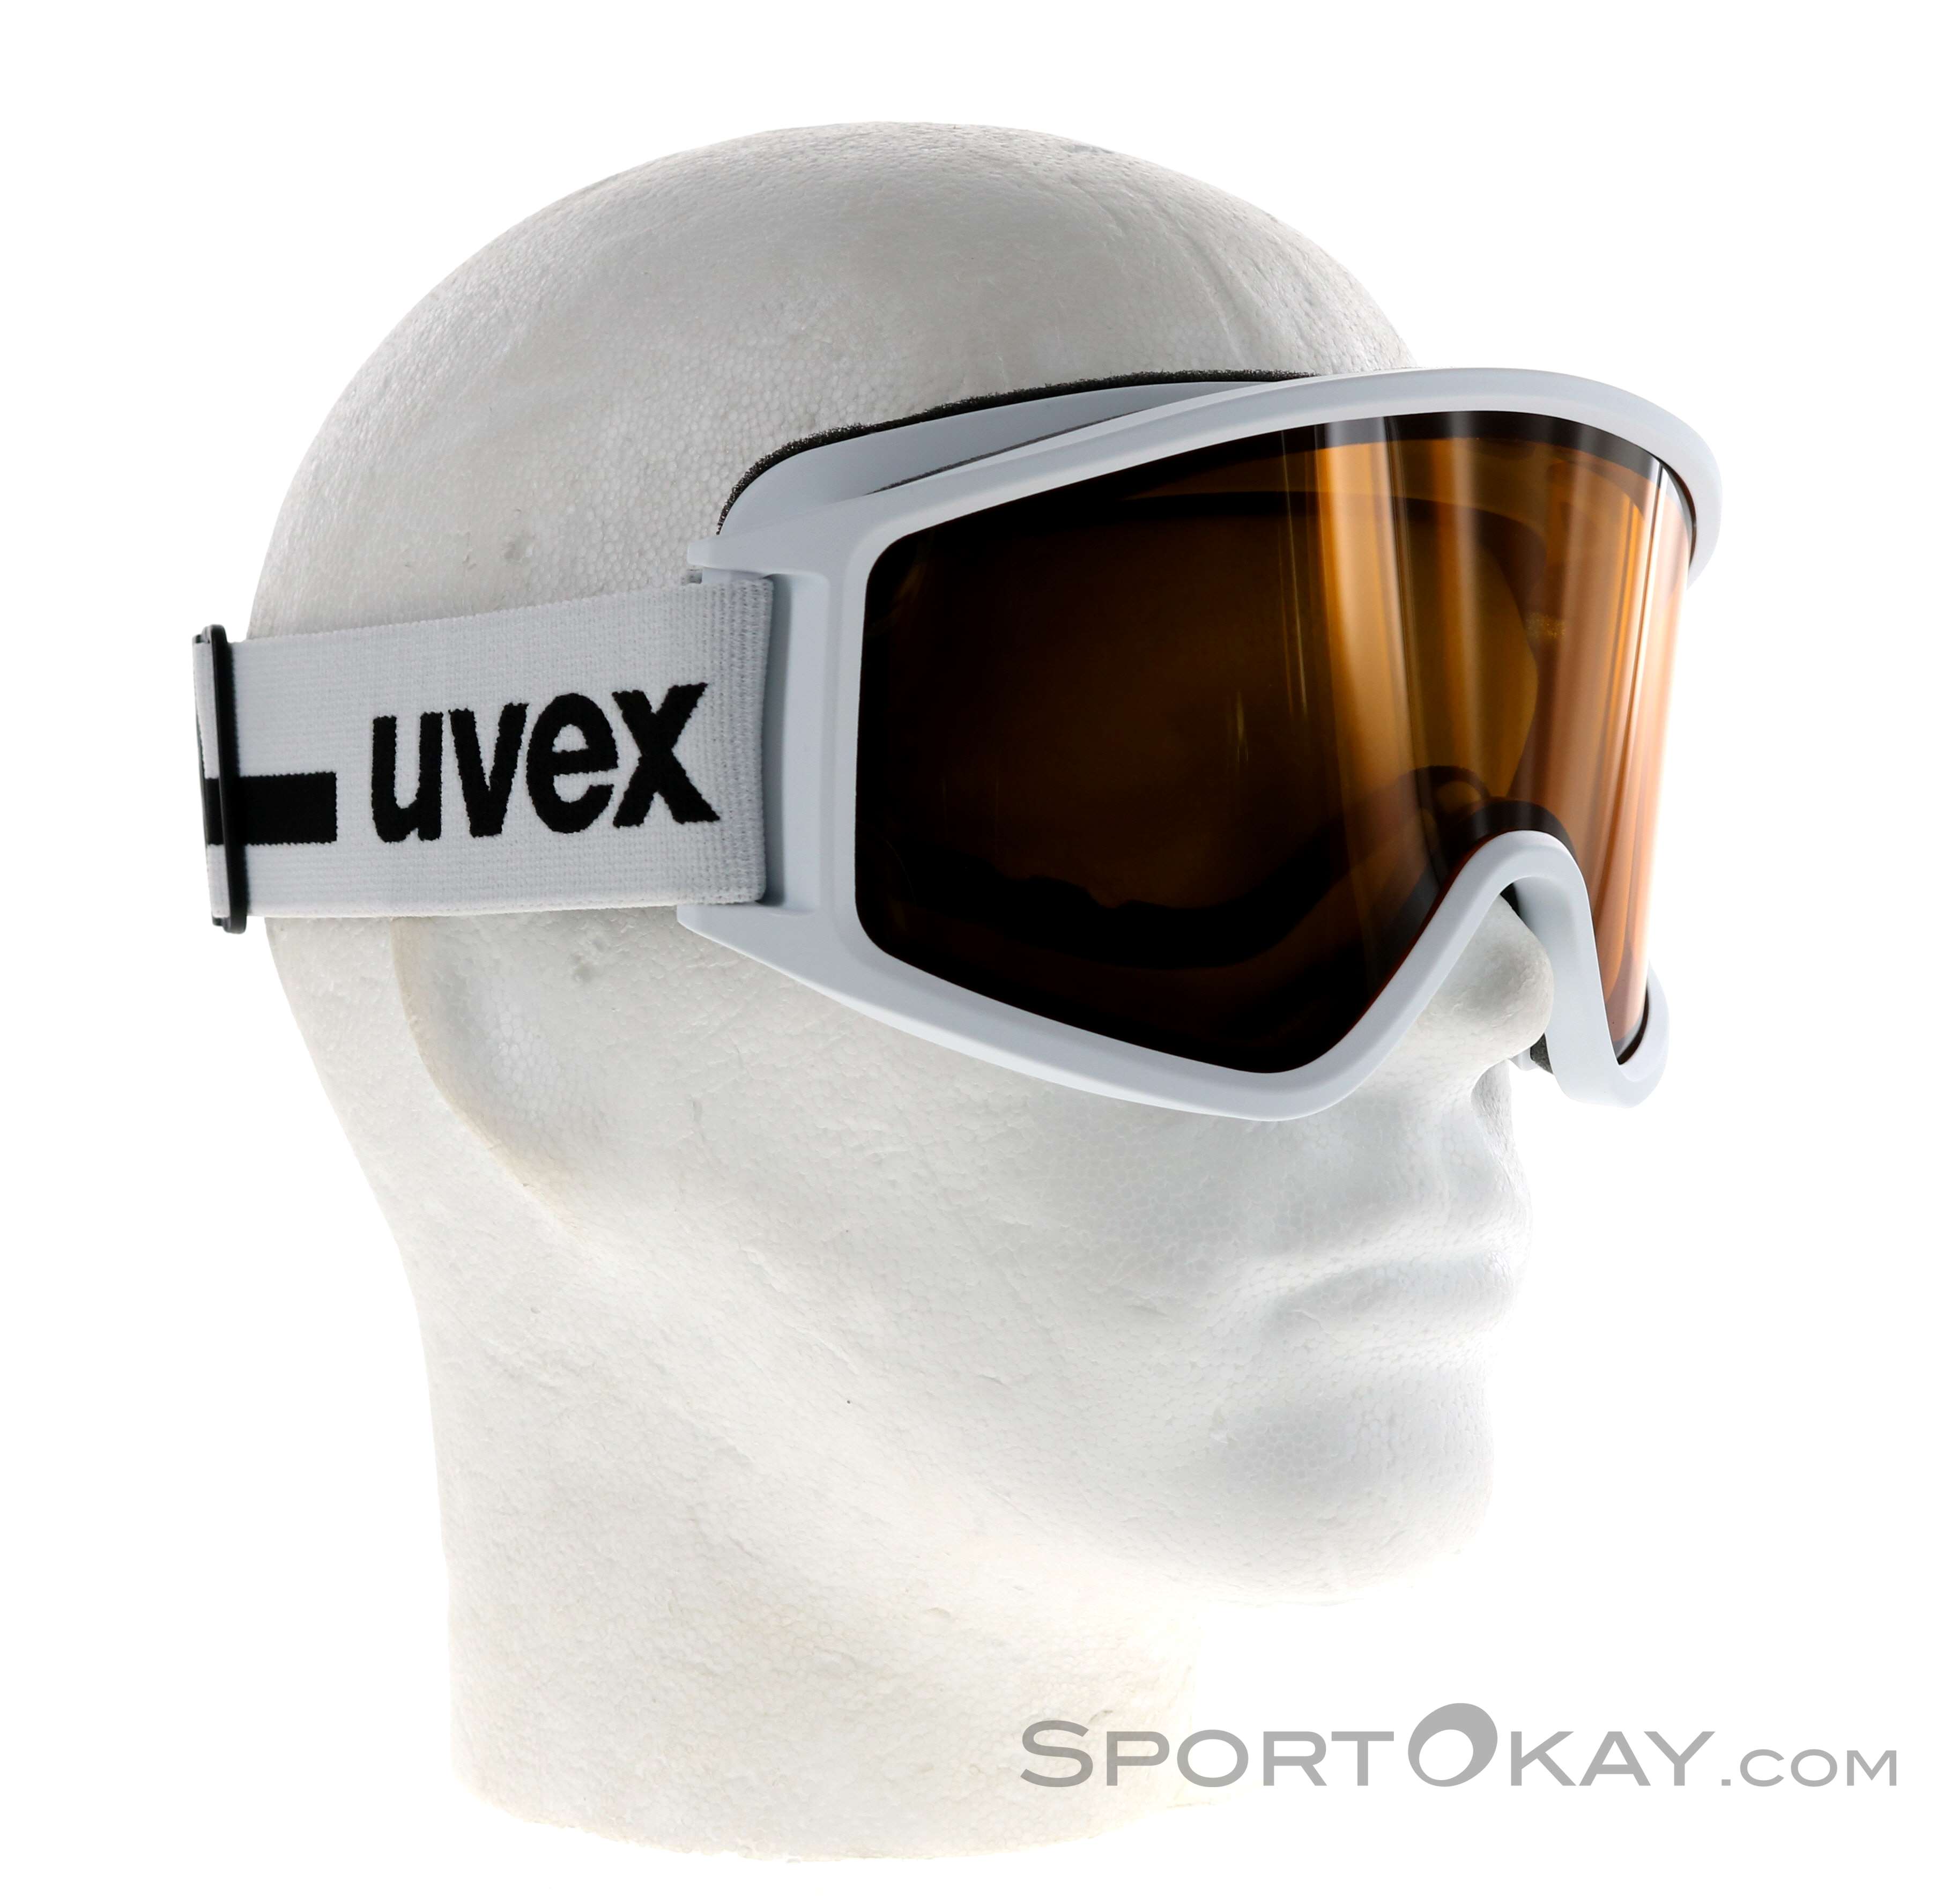 UVEX Uvex G.GL 300 P - Maschera da sci polarizzata Uomo black  mat/polavision brown - Private Sport Shop